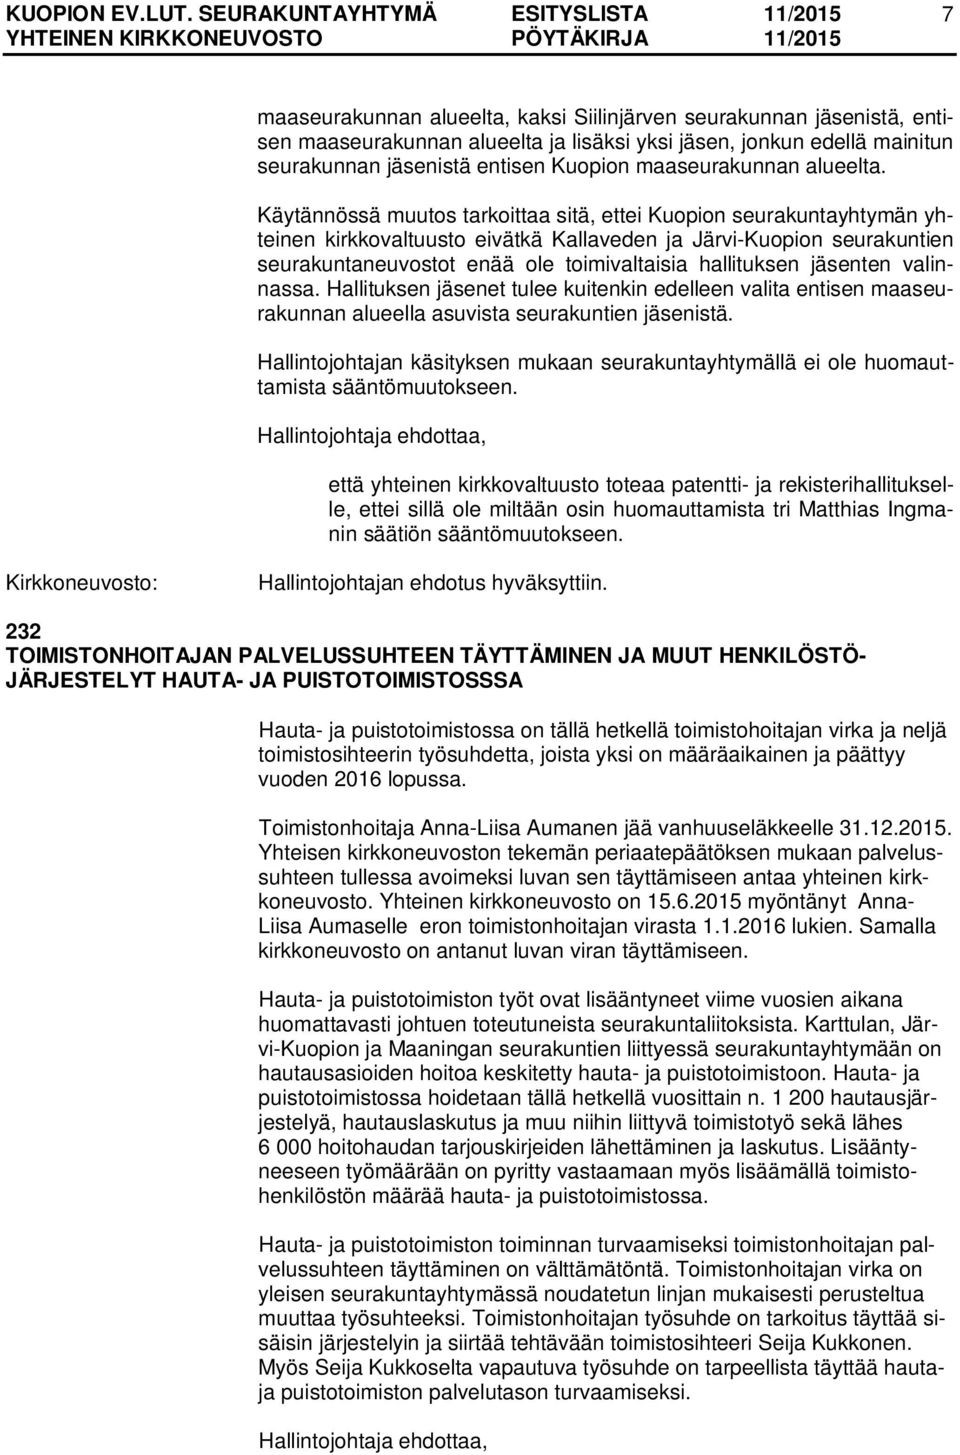 Käytännössä muutos tarkoittaa sitä, ettei Kuopion seurakuntayhtymän yhteinen kirkkovaltuusto eivätkä Kallaveden ja Järvi-Kuopion seurakuntien seurakuntaneuvostot enää ole toimivaltaisia hallituksen